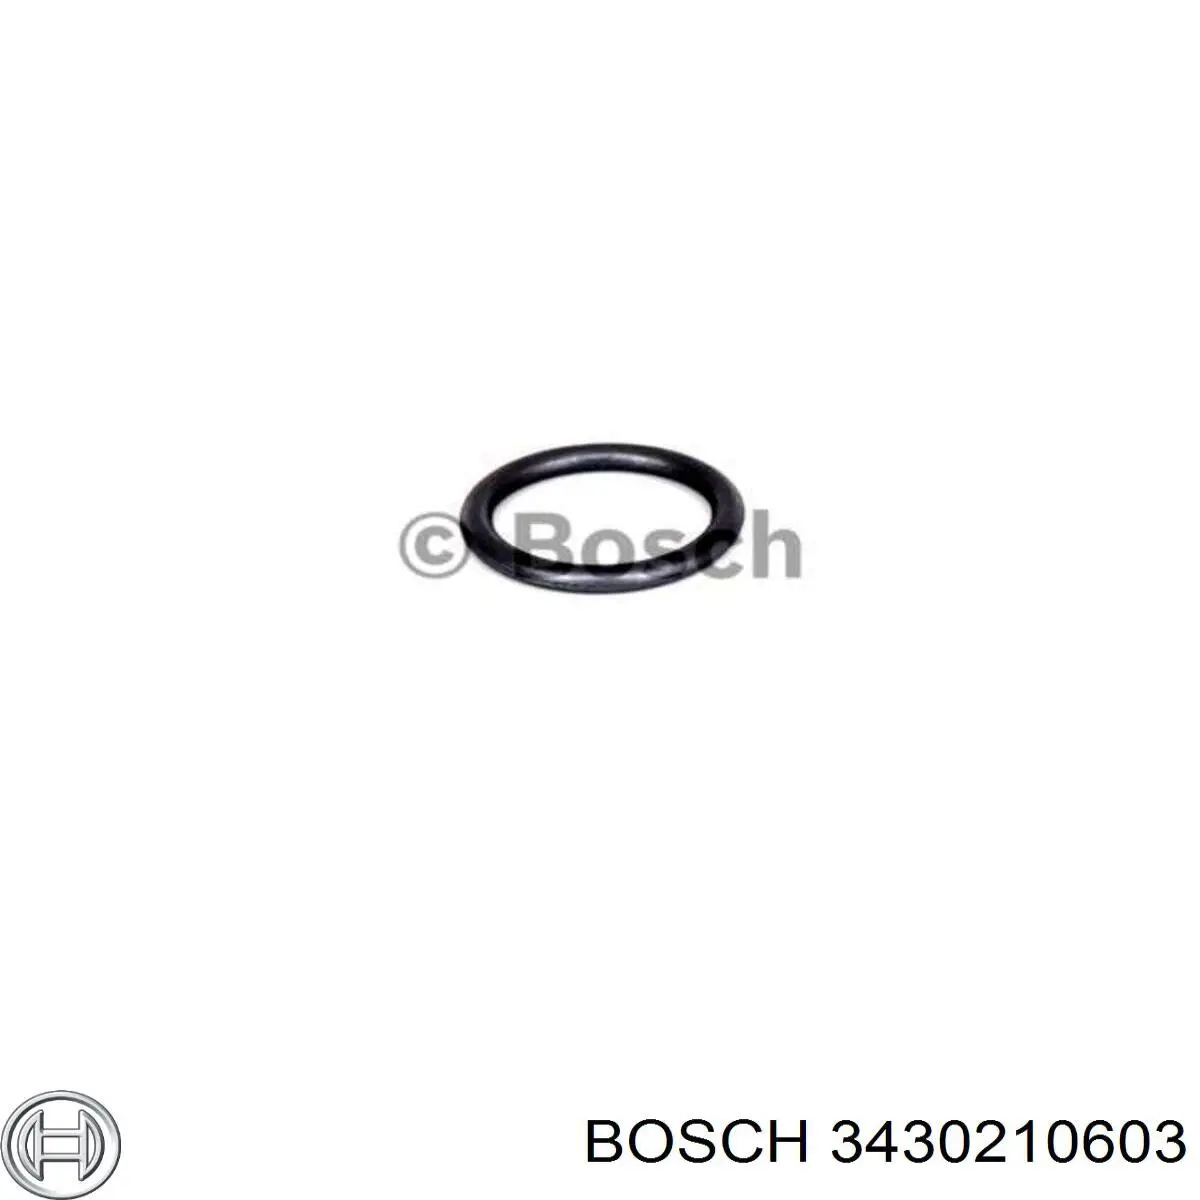 3430210603 Bosch кольцо (шайба форсунки инжектора посадочное)